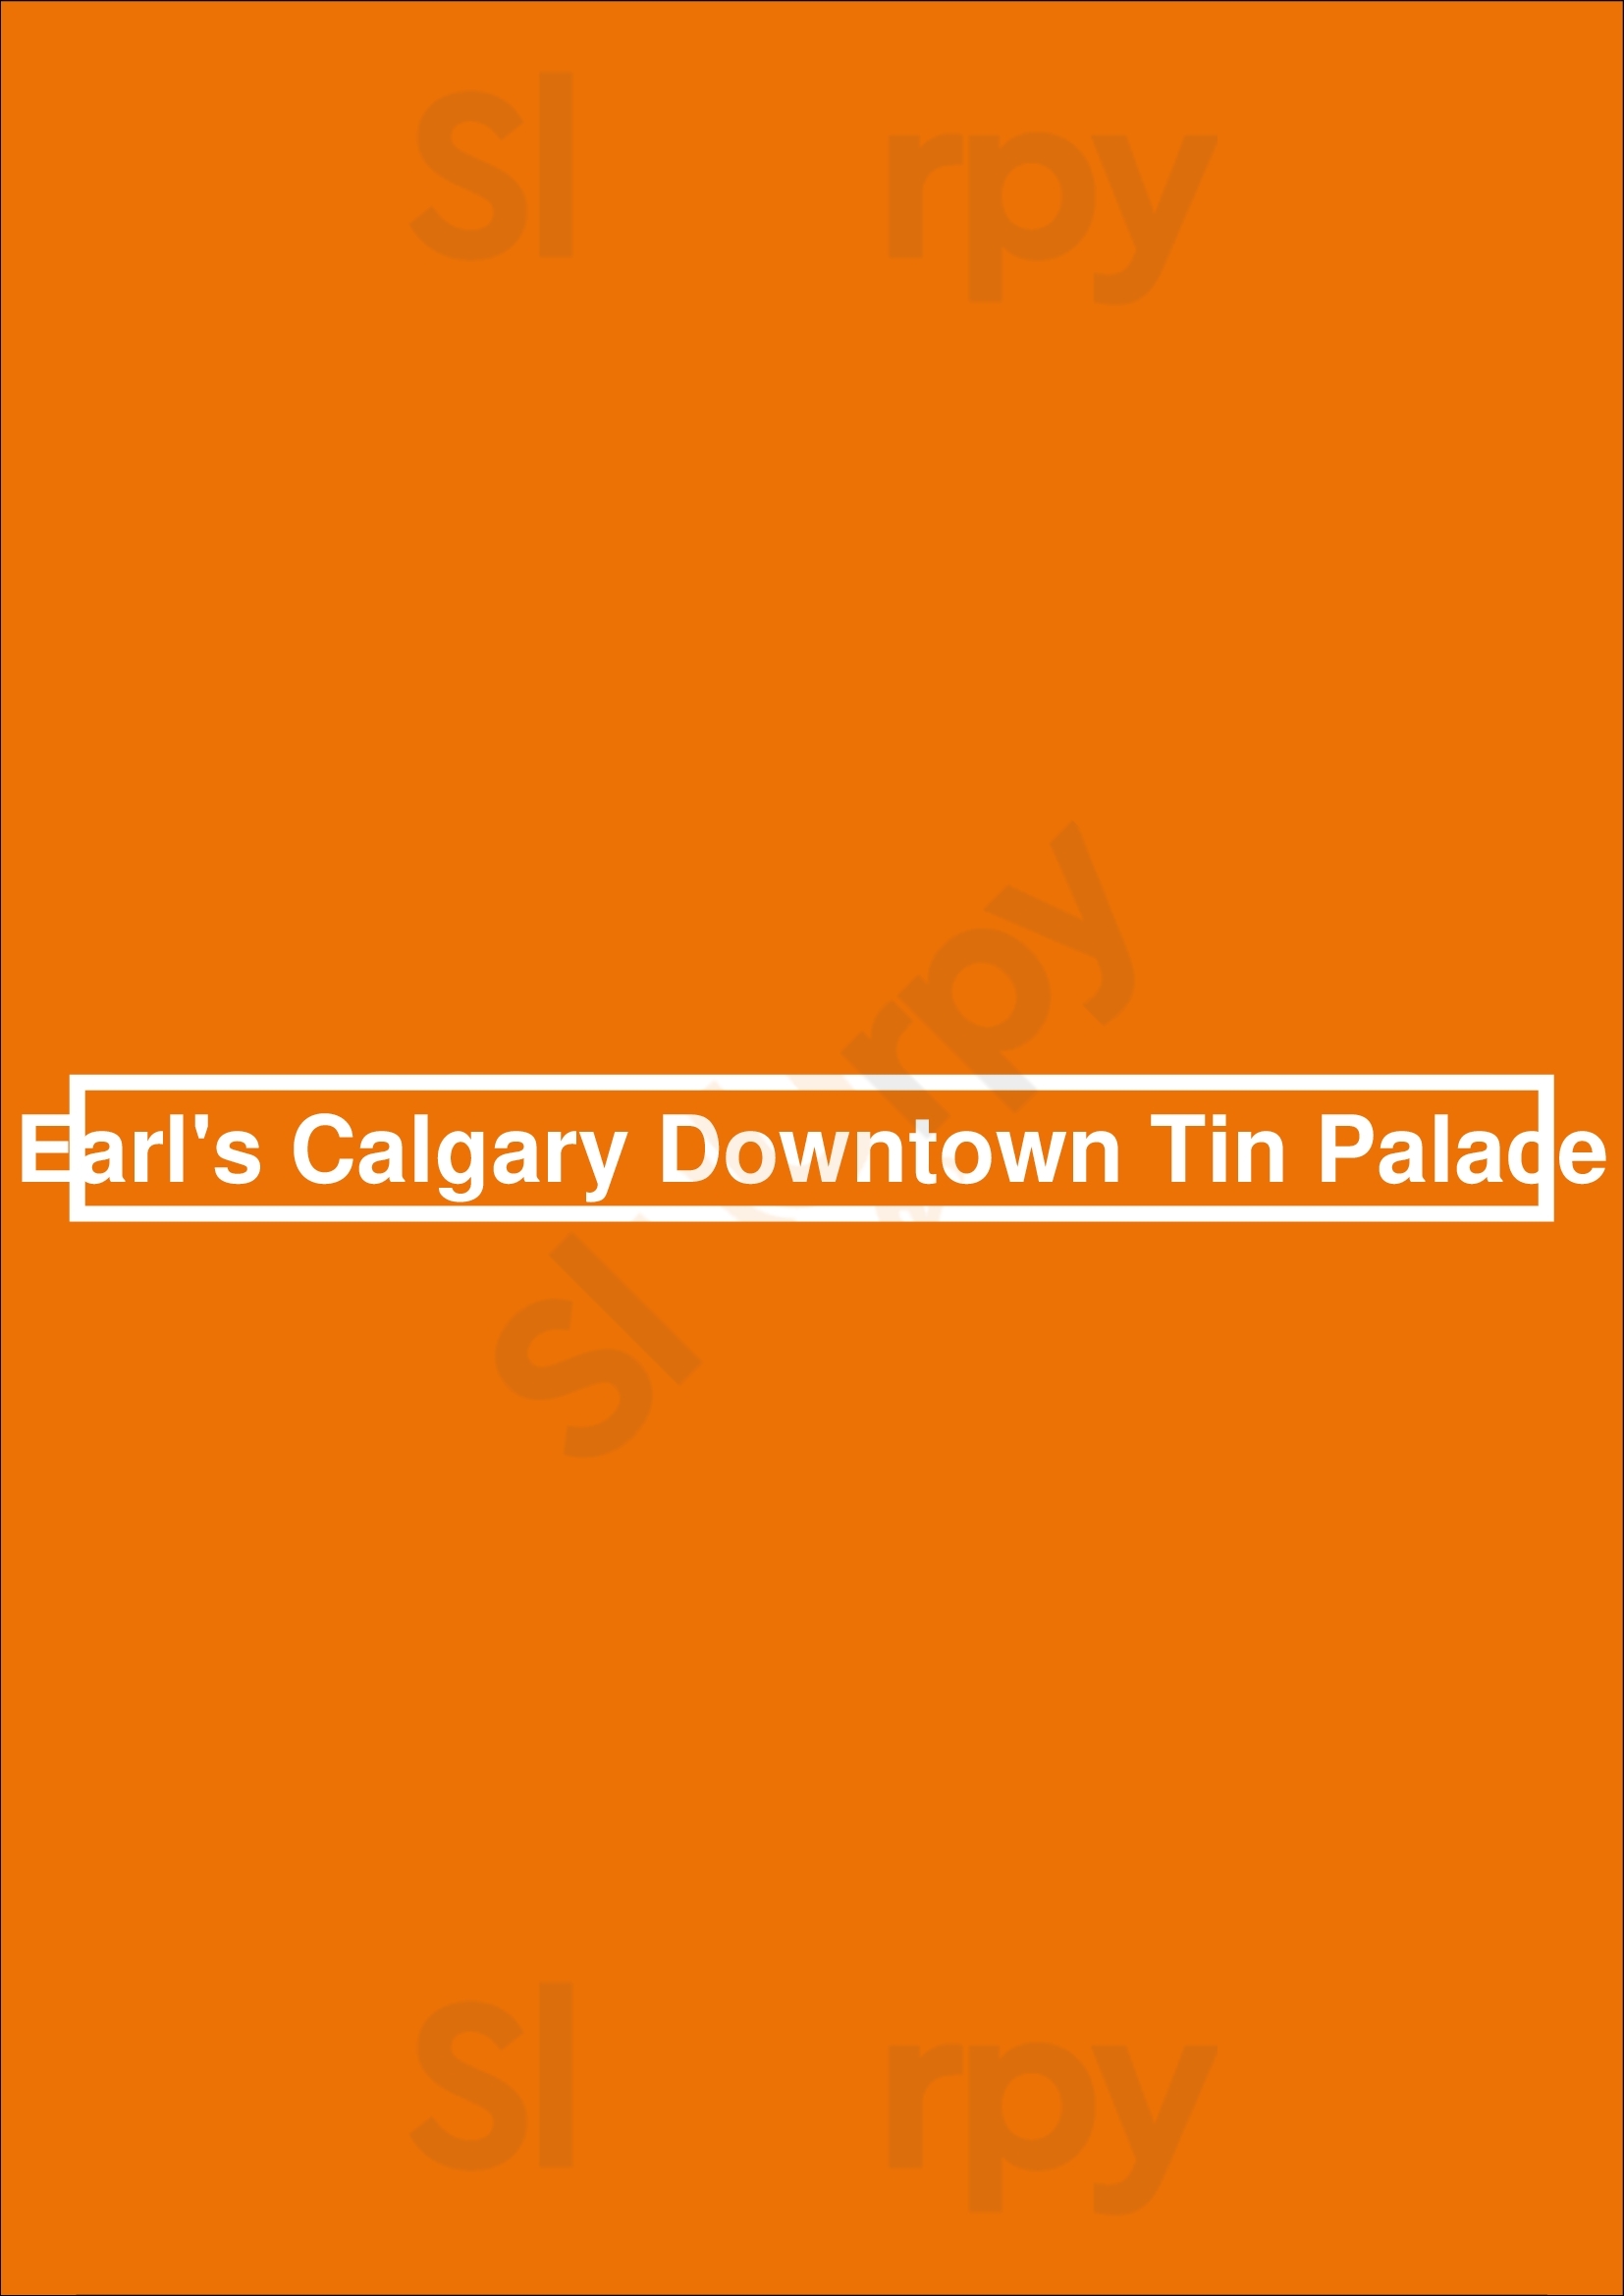 Earls Calgary Tin Palace Calgary Menu - 1